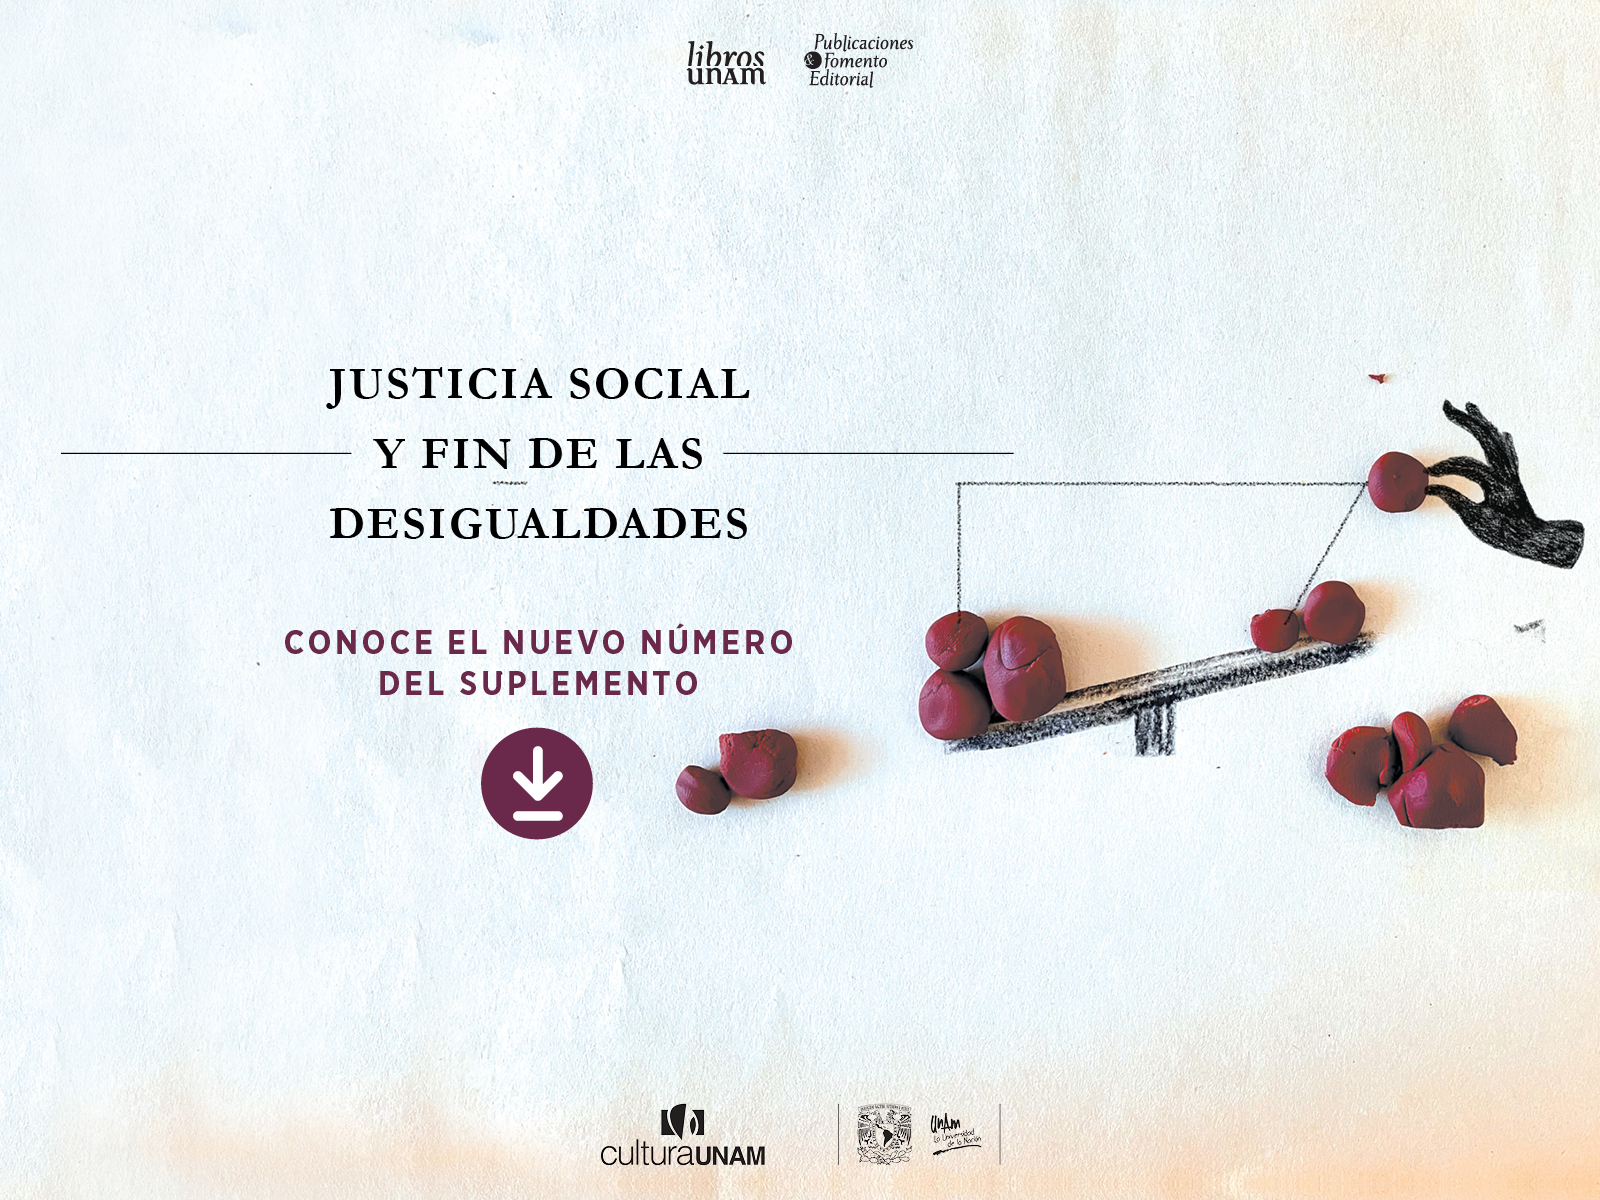 Libros UNAM, suplemento de febrero 2023,  Justicia social y fin de las desigualdades - Libros UNAM